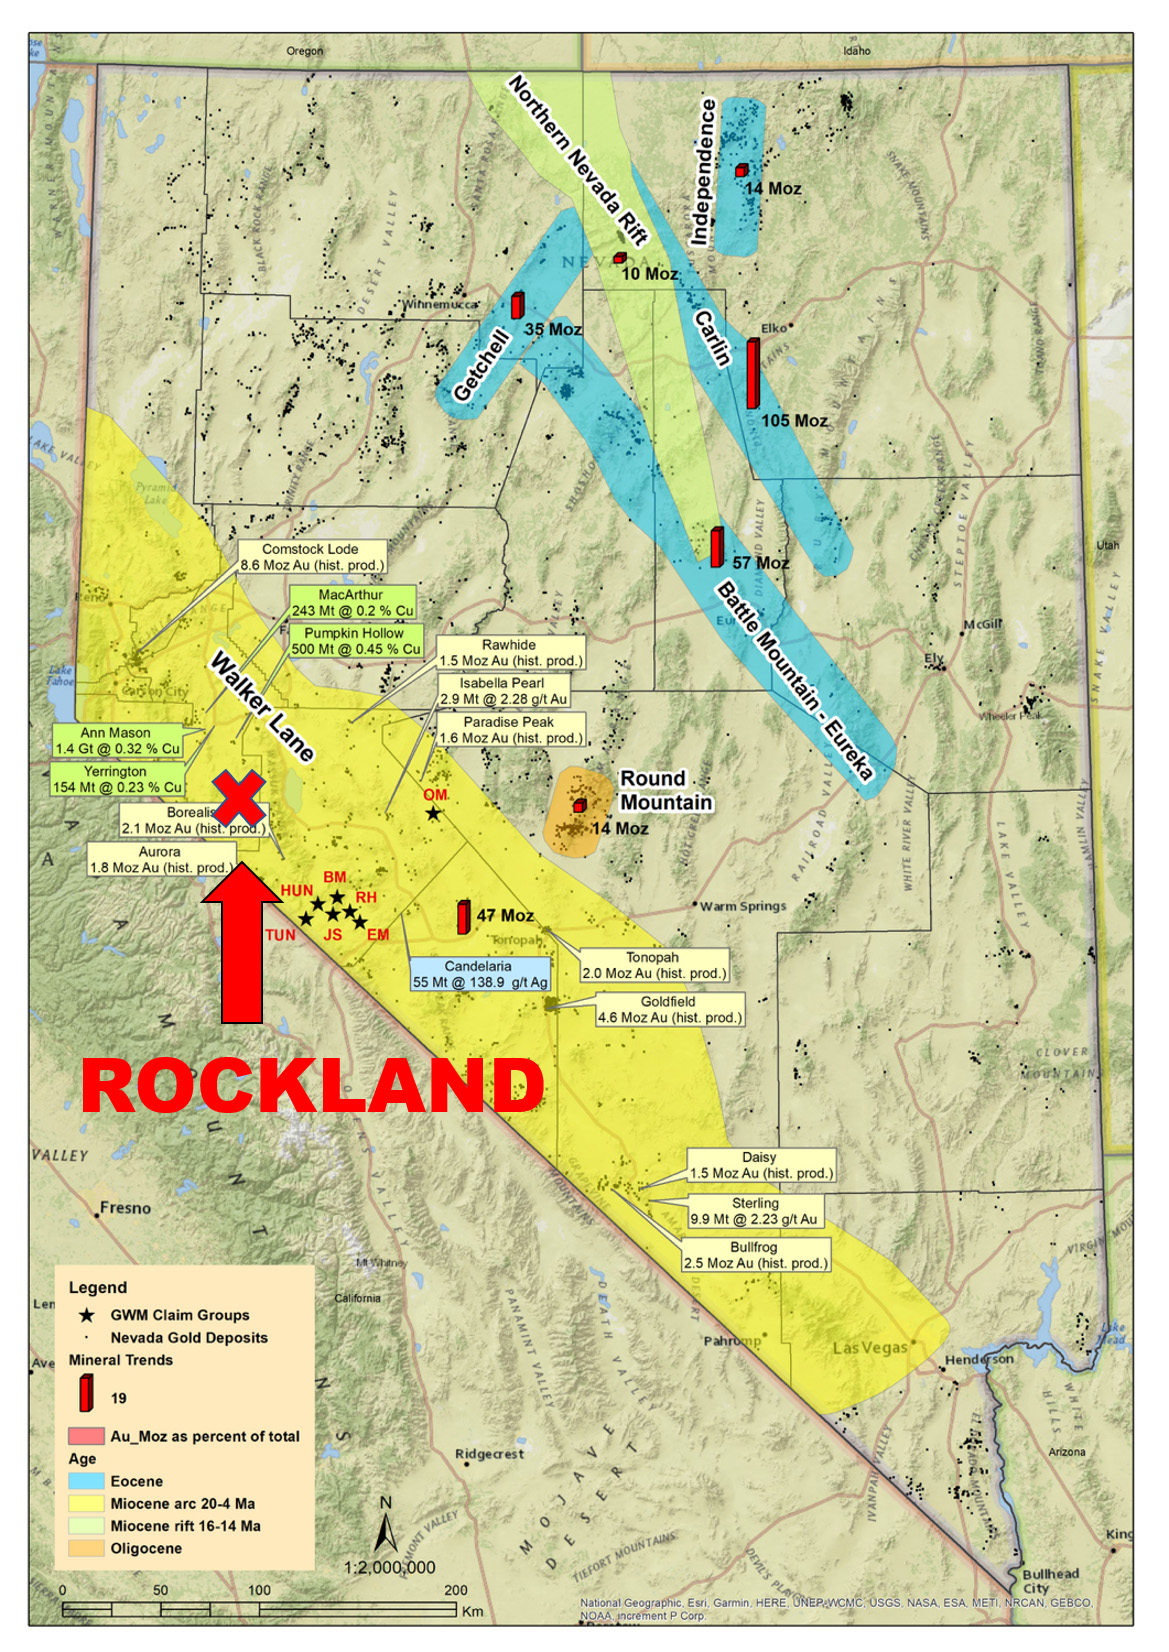 RocklandLocation Map